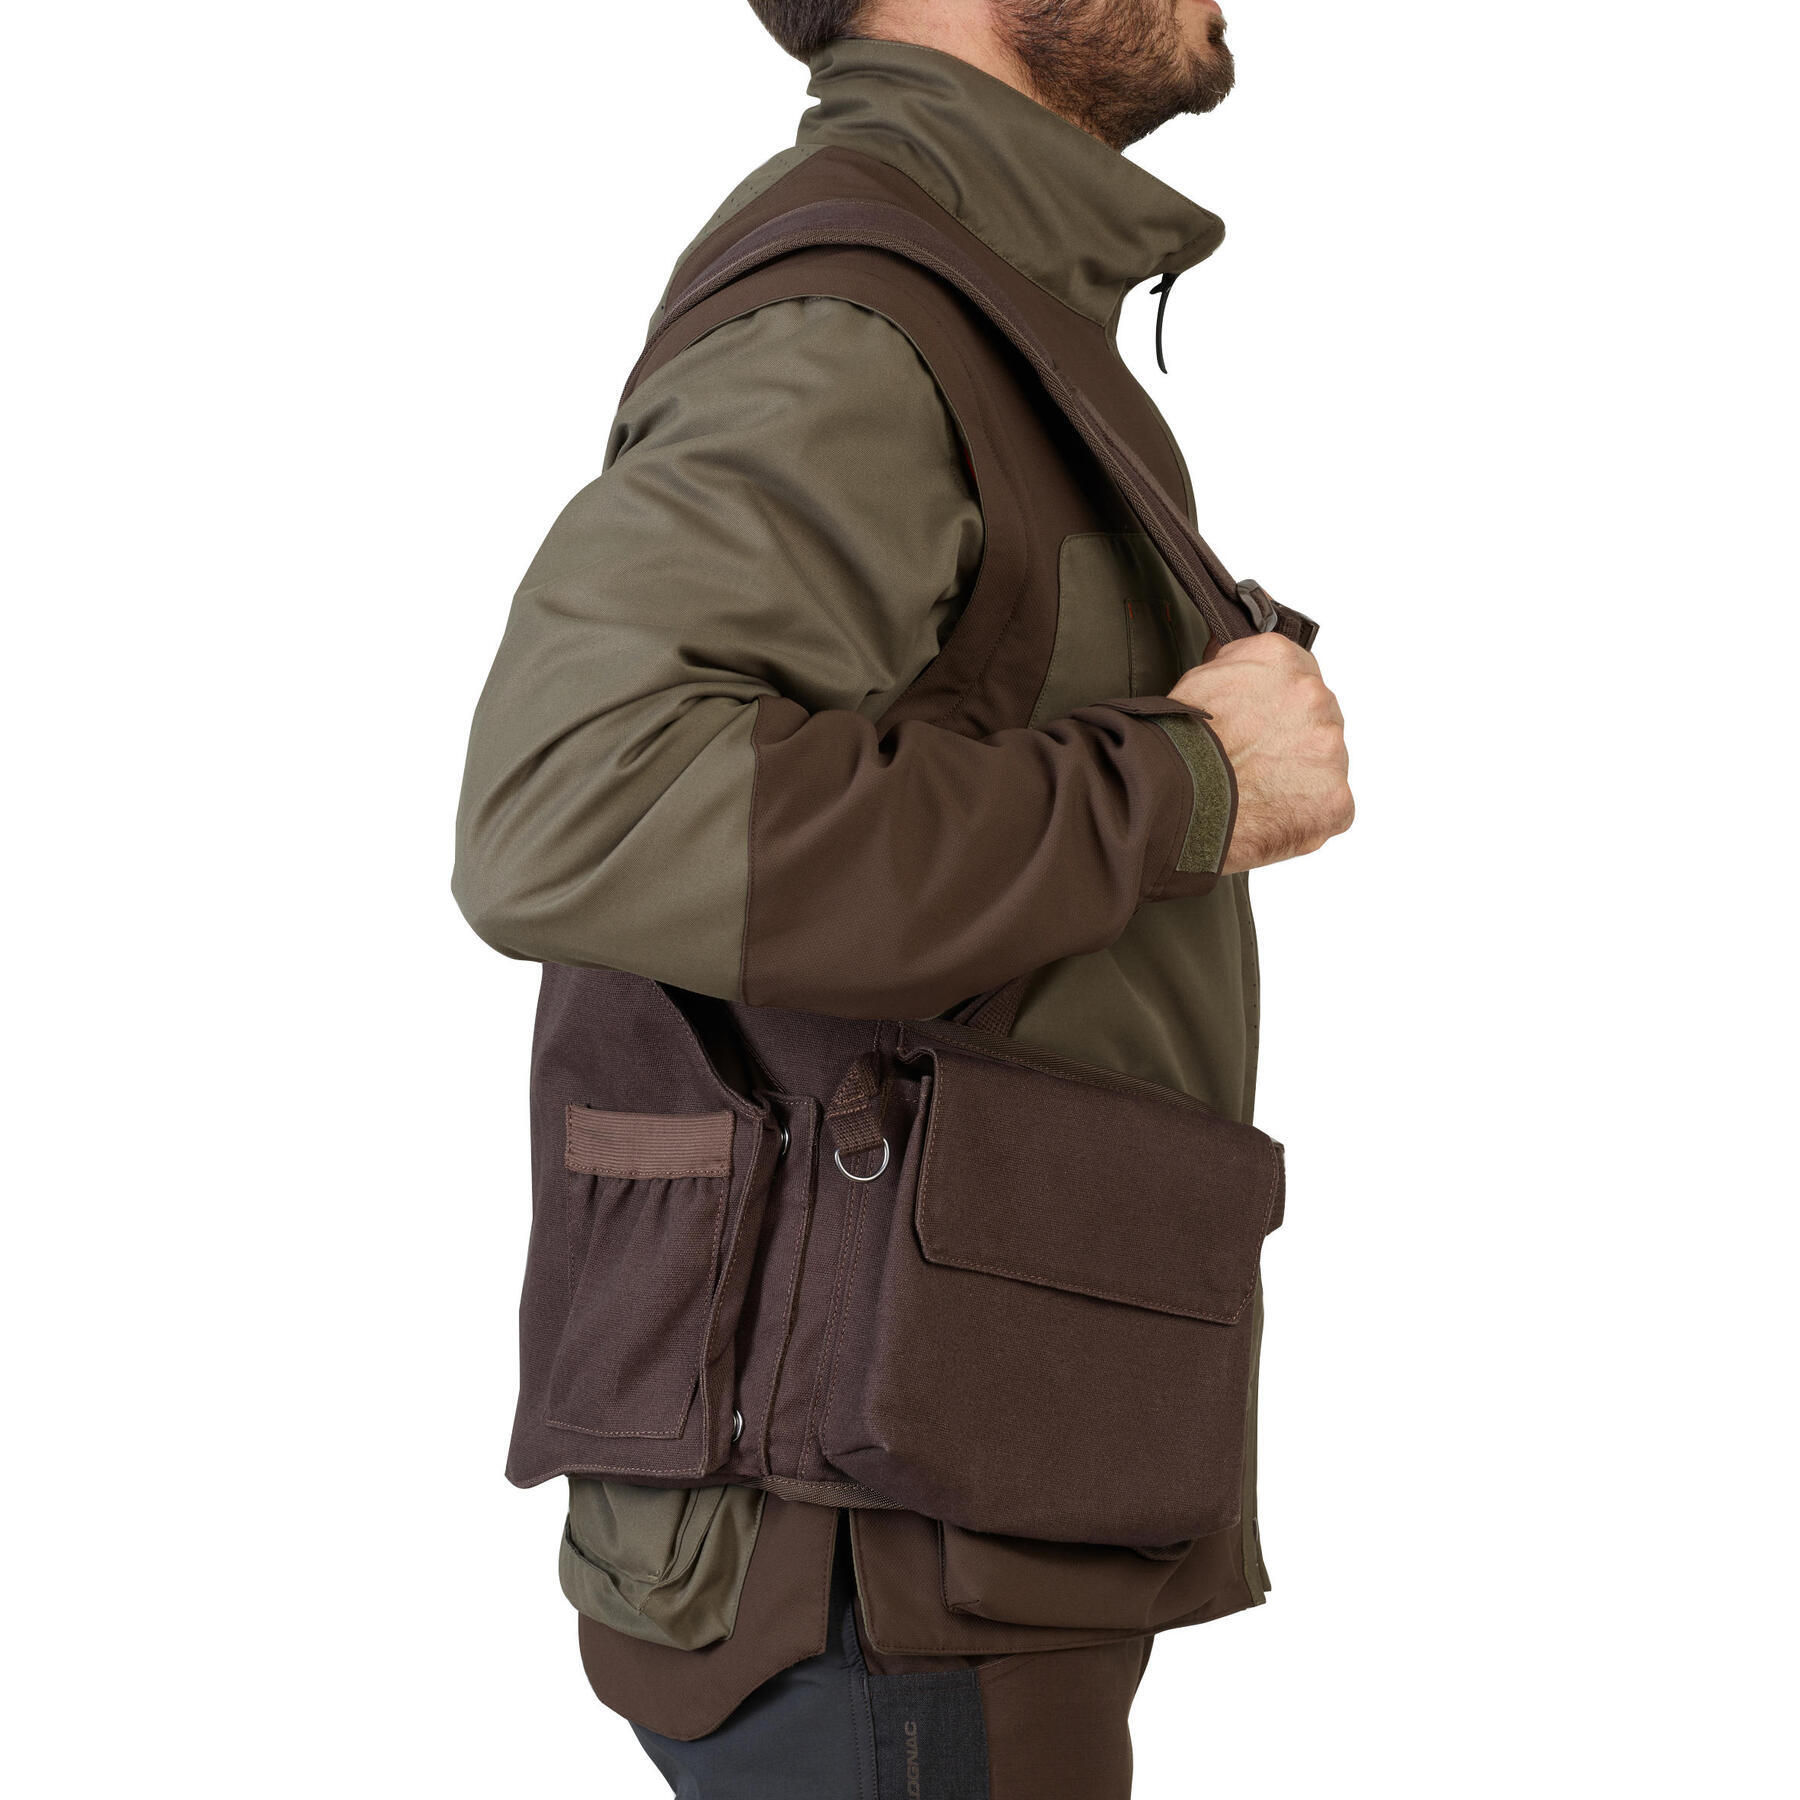 Refurbished Mens Hunting Resistant Waistcoat - 900 brown - C Grade 7/7